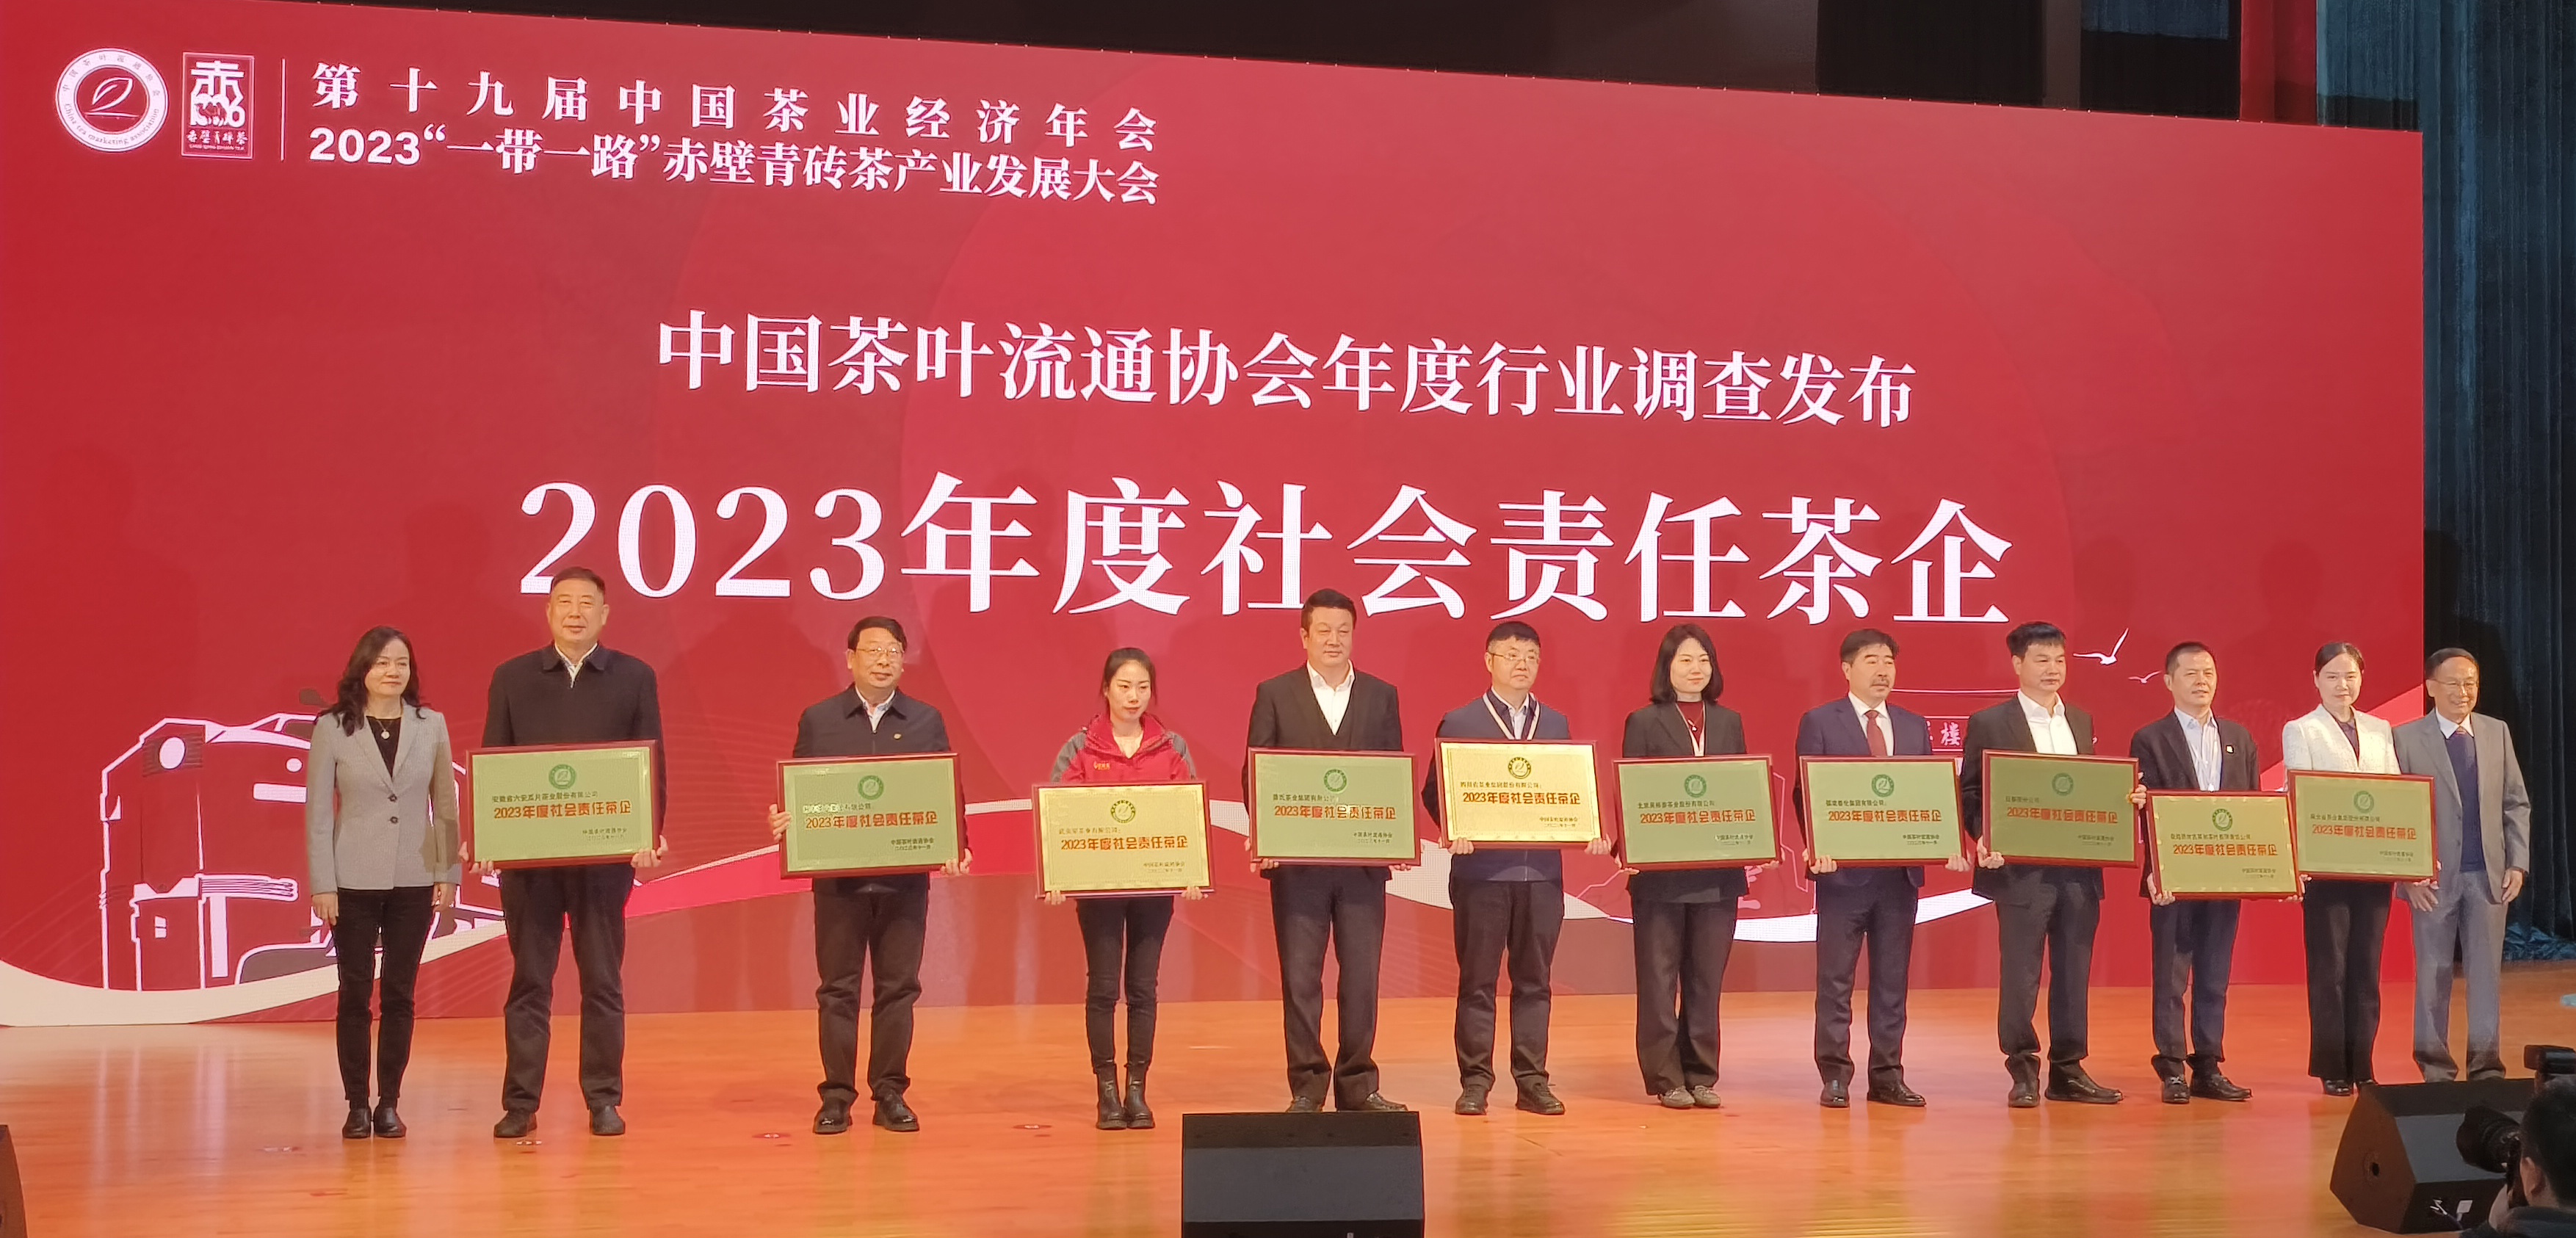 湘丰茶业集团荣获“2023年度社会责任茶企”、“2023年度重点茶企”称号！